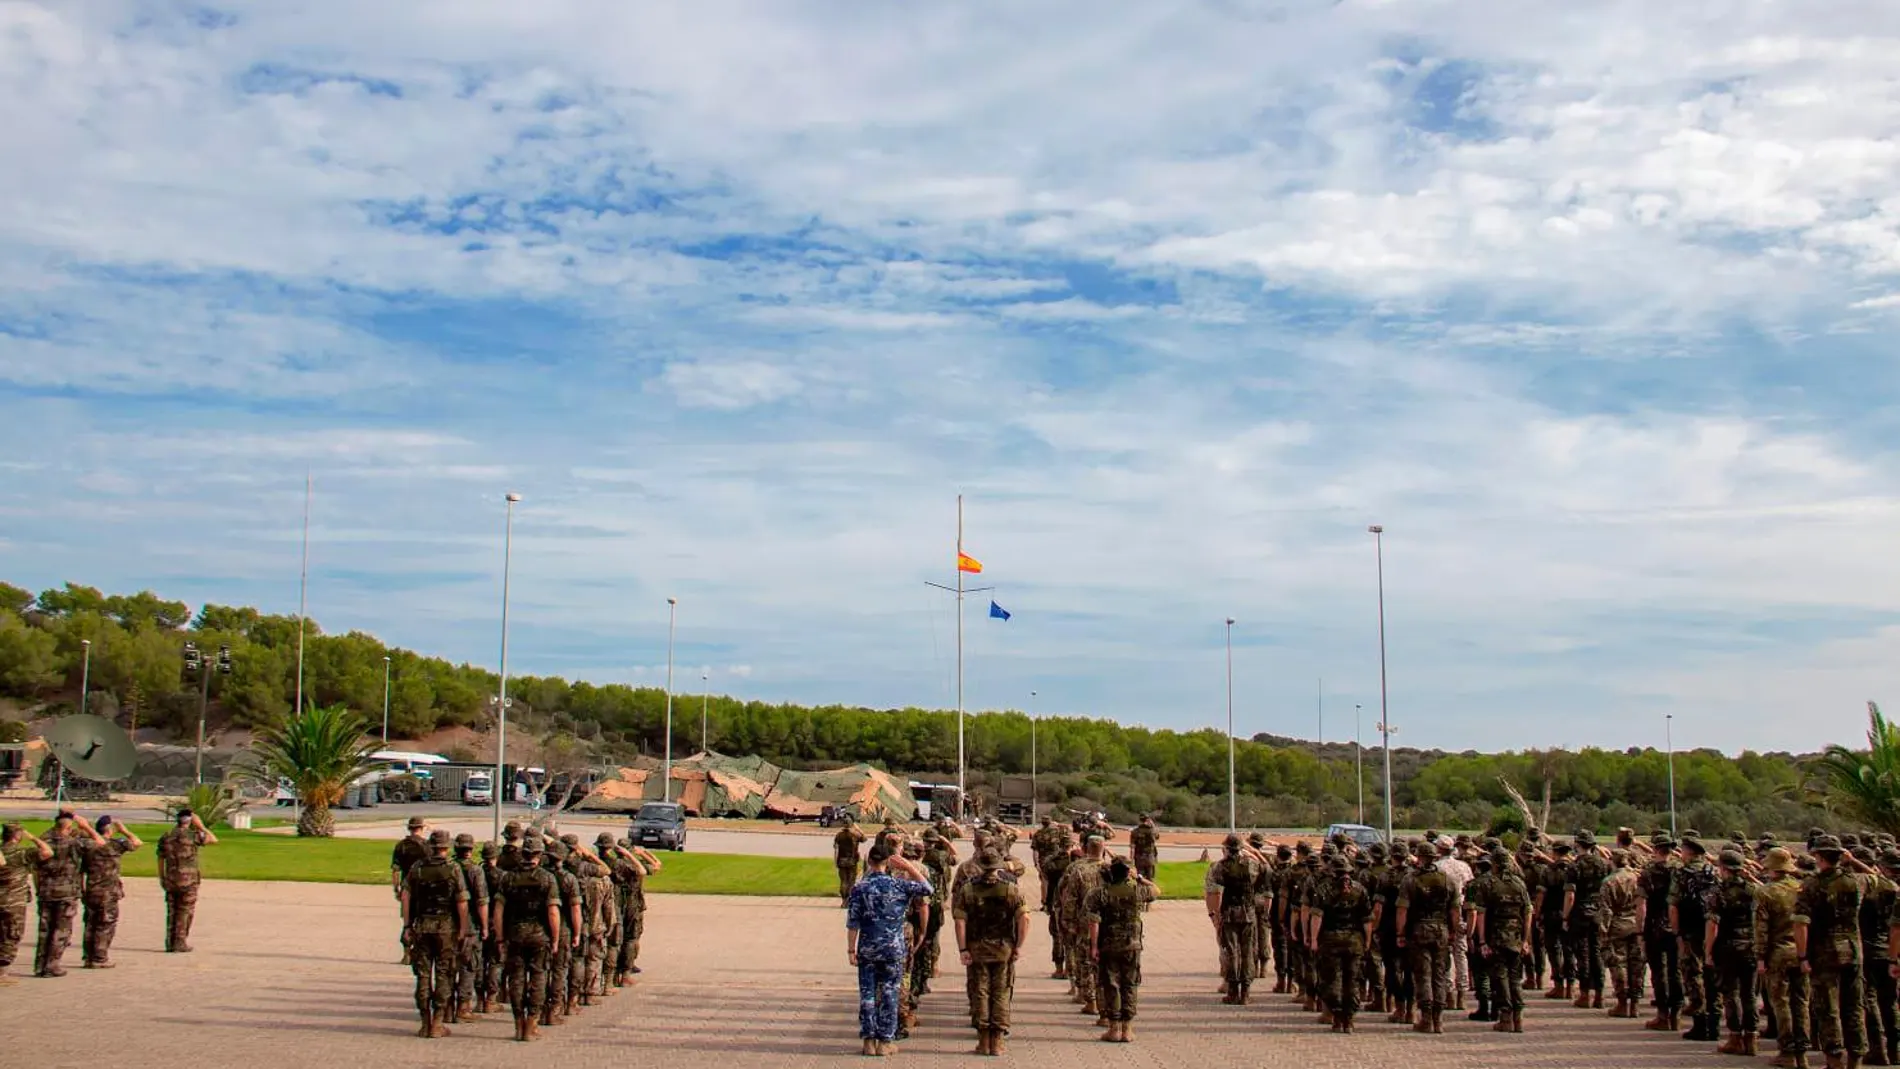 Las banderas de la OTAN y la de España se izaron juntas frente a los participantes de las maniobras Trident Jackal 19